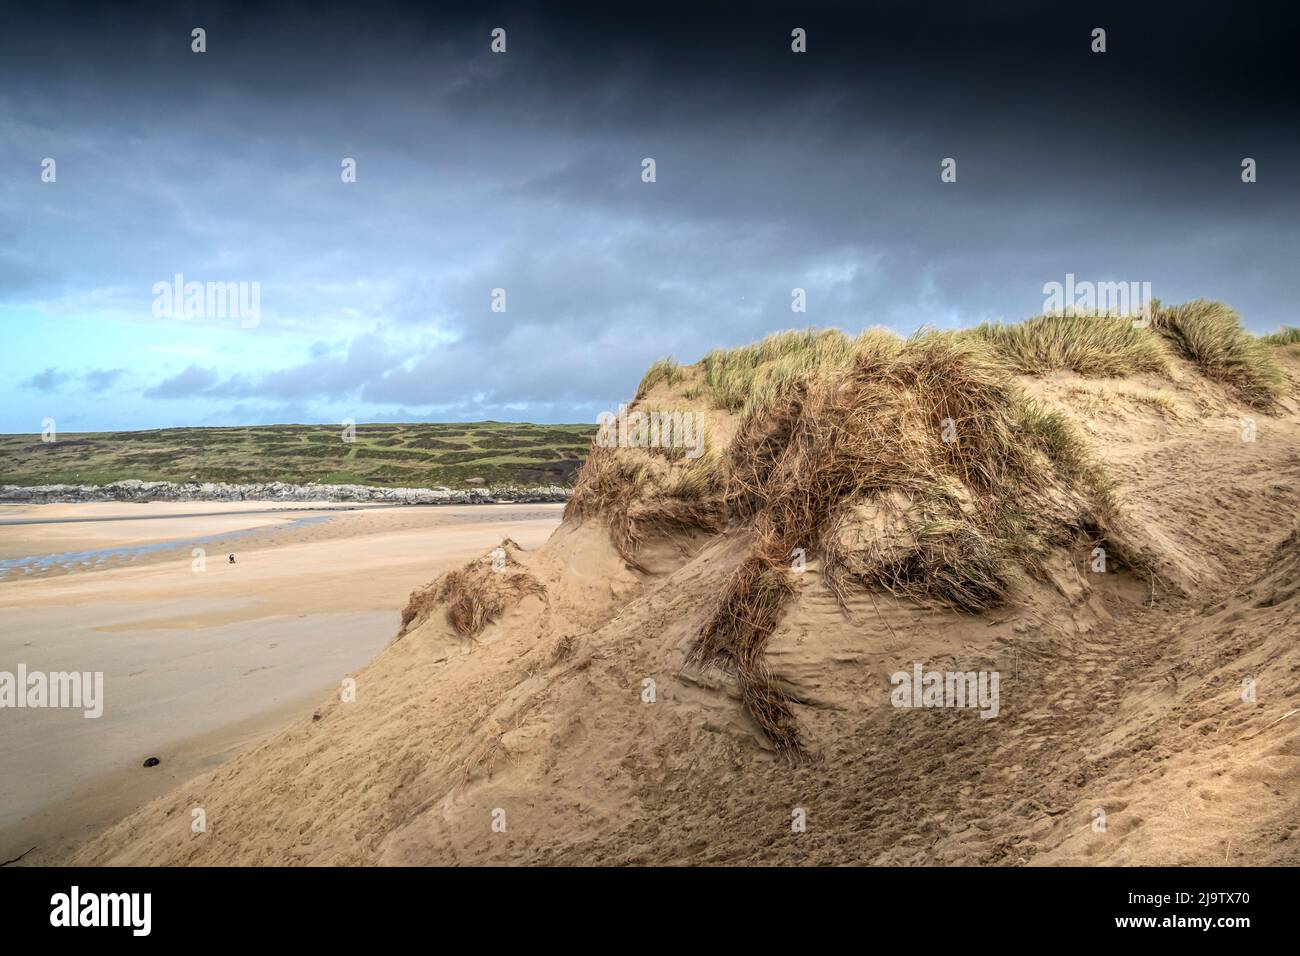 Les dommages graves causés par l'activité humaine au système fragile de dunes de sable délicates de Crantock Beach, à Newquay, en Cornwall. Banque D'Images